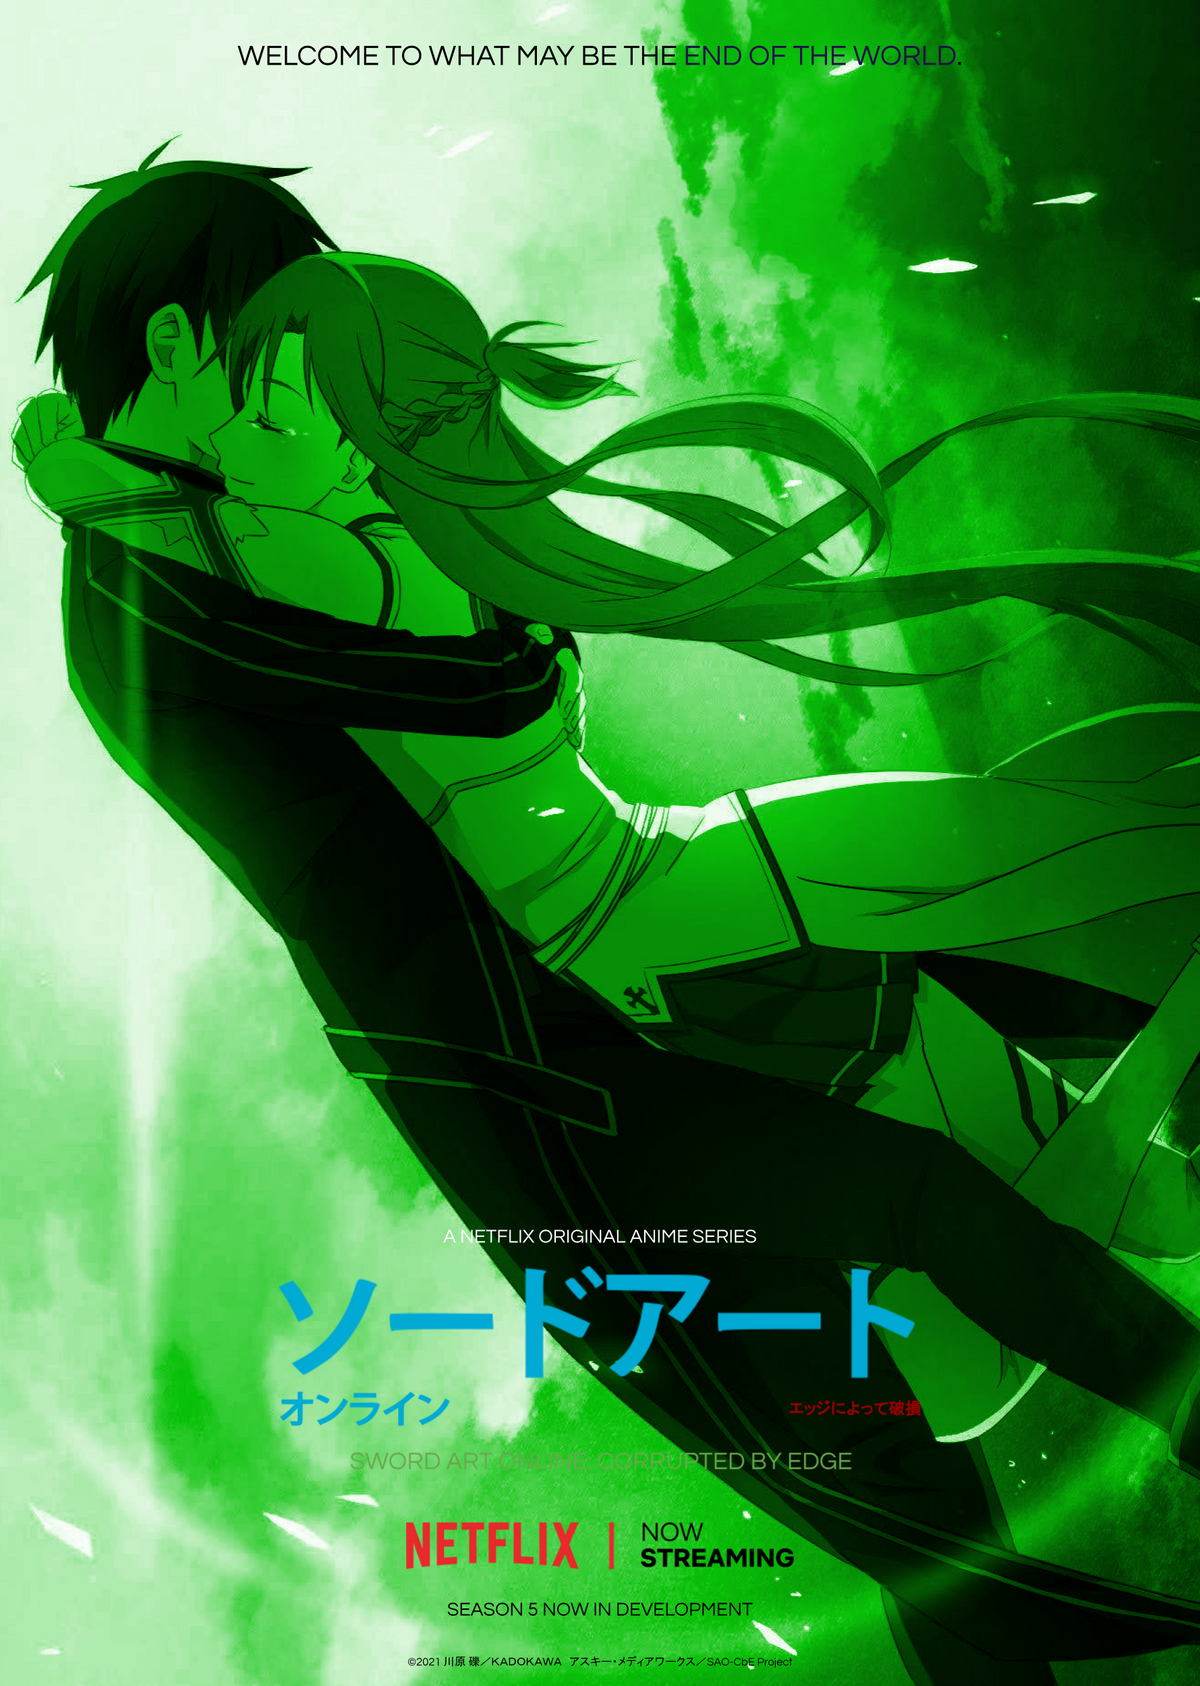 Sky Video Games Anime Sword Art Online Matte Finish Poster